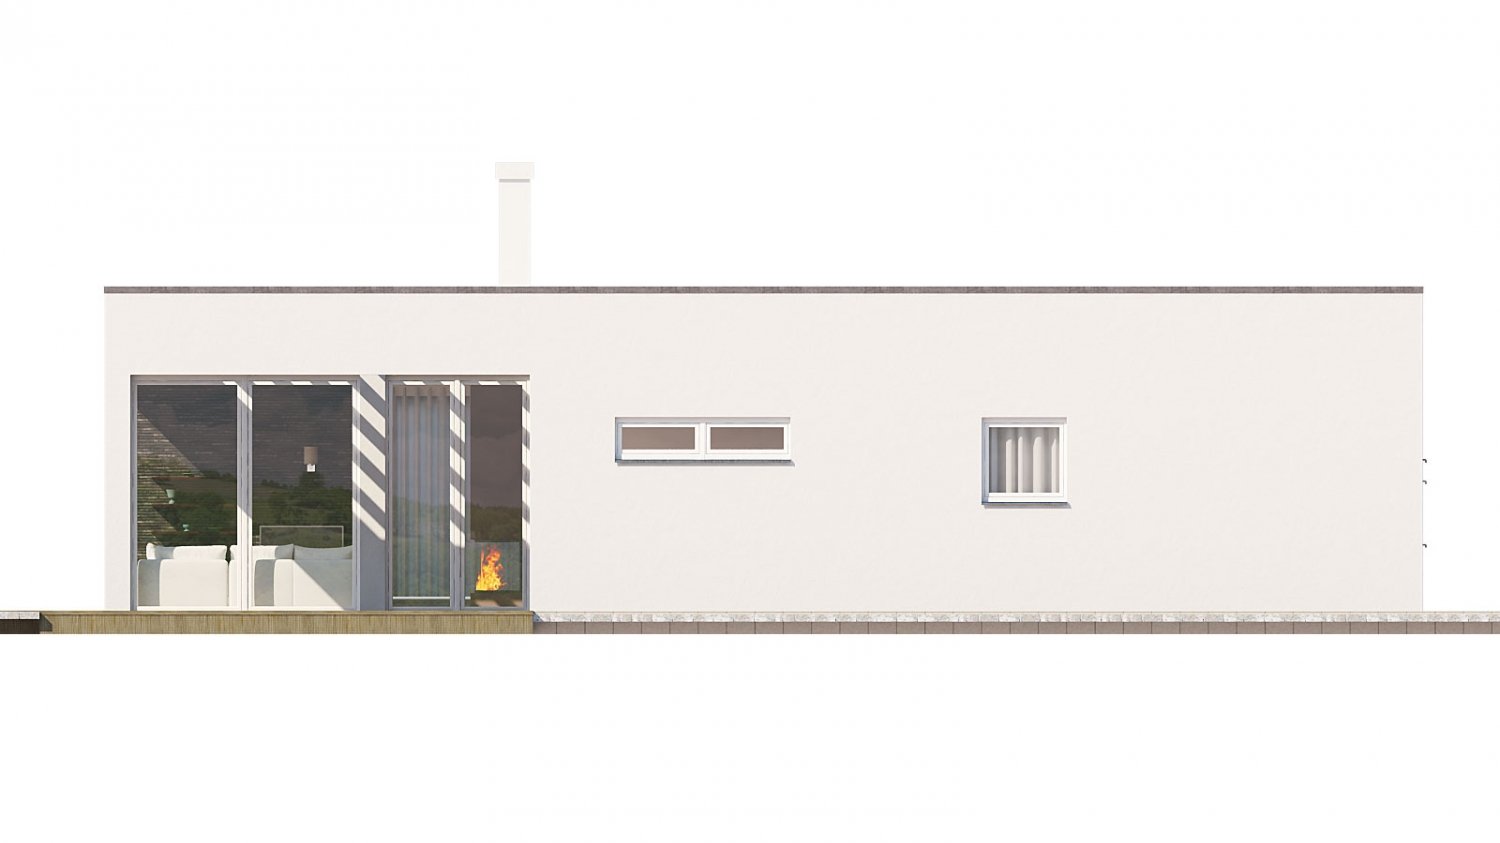 Zrkadlový pohľad 3. - Rodinný dům do tvaru L s garáží, s plochou rovnou střechou.